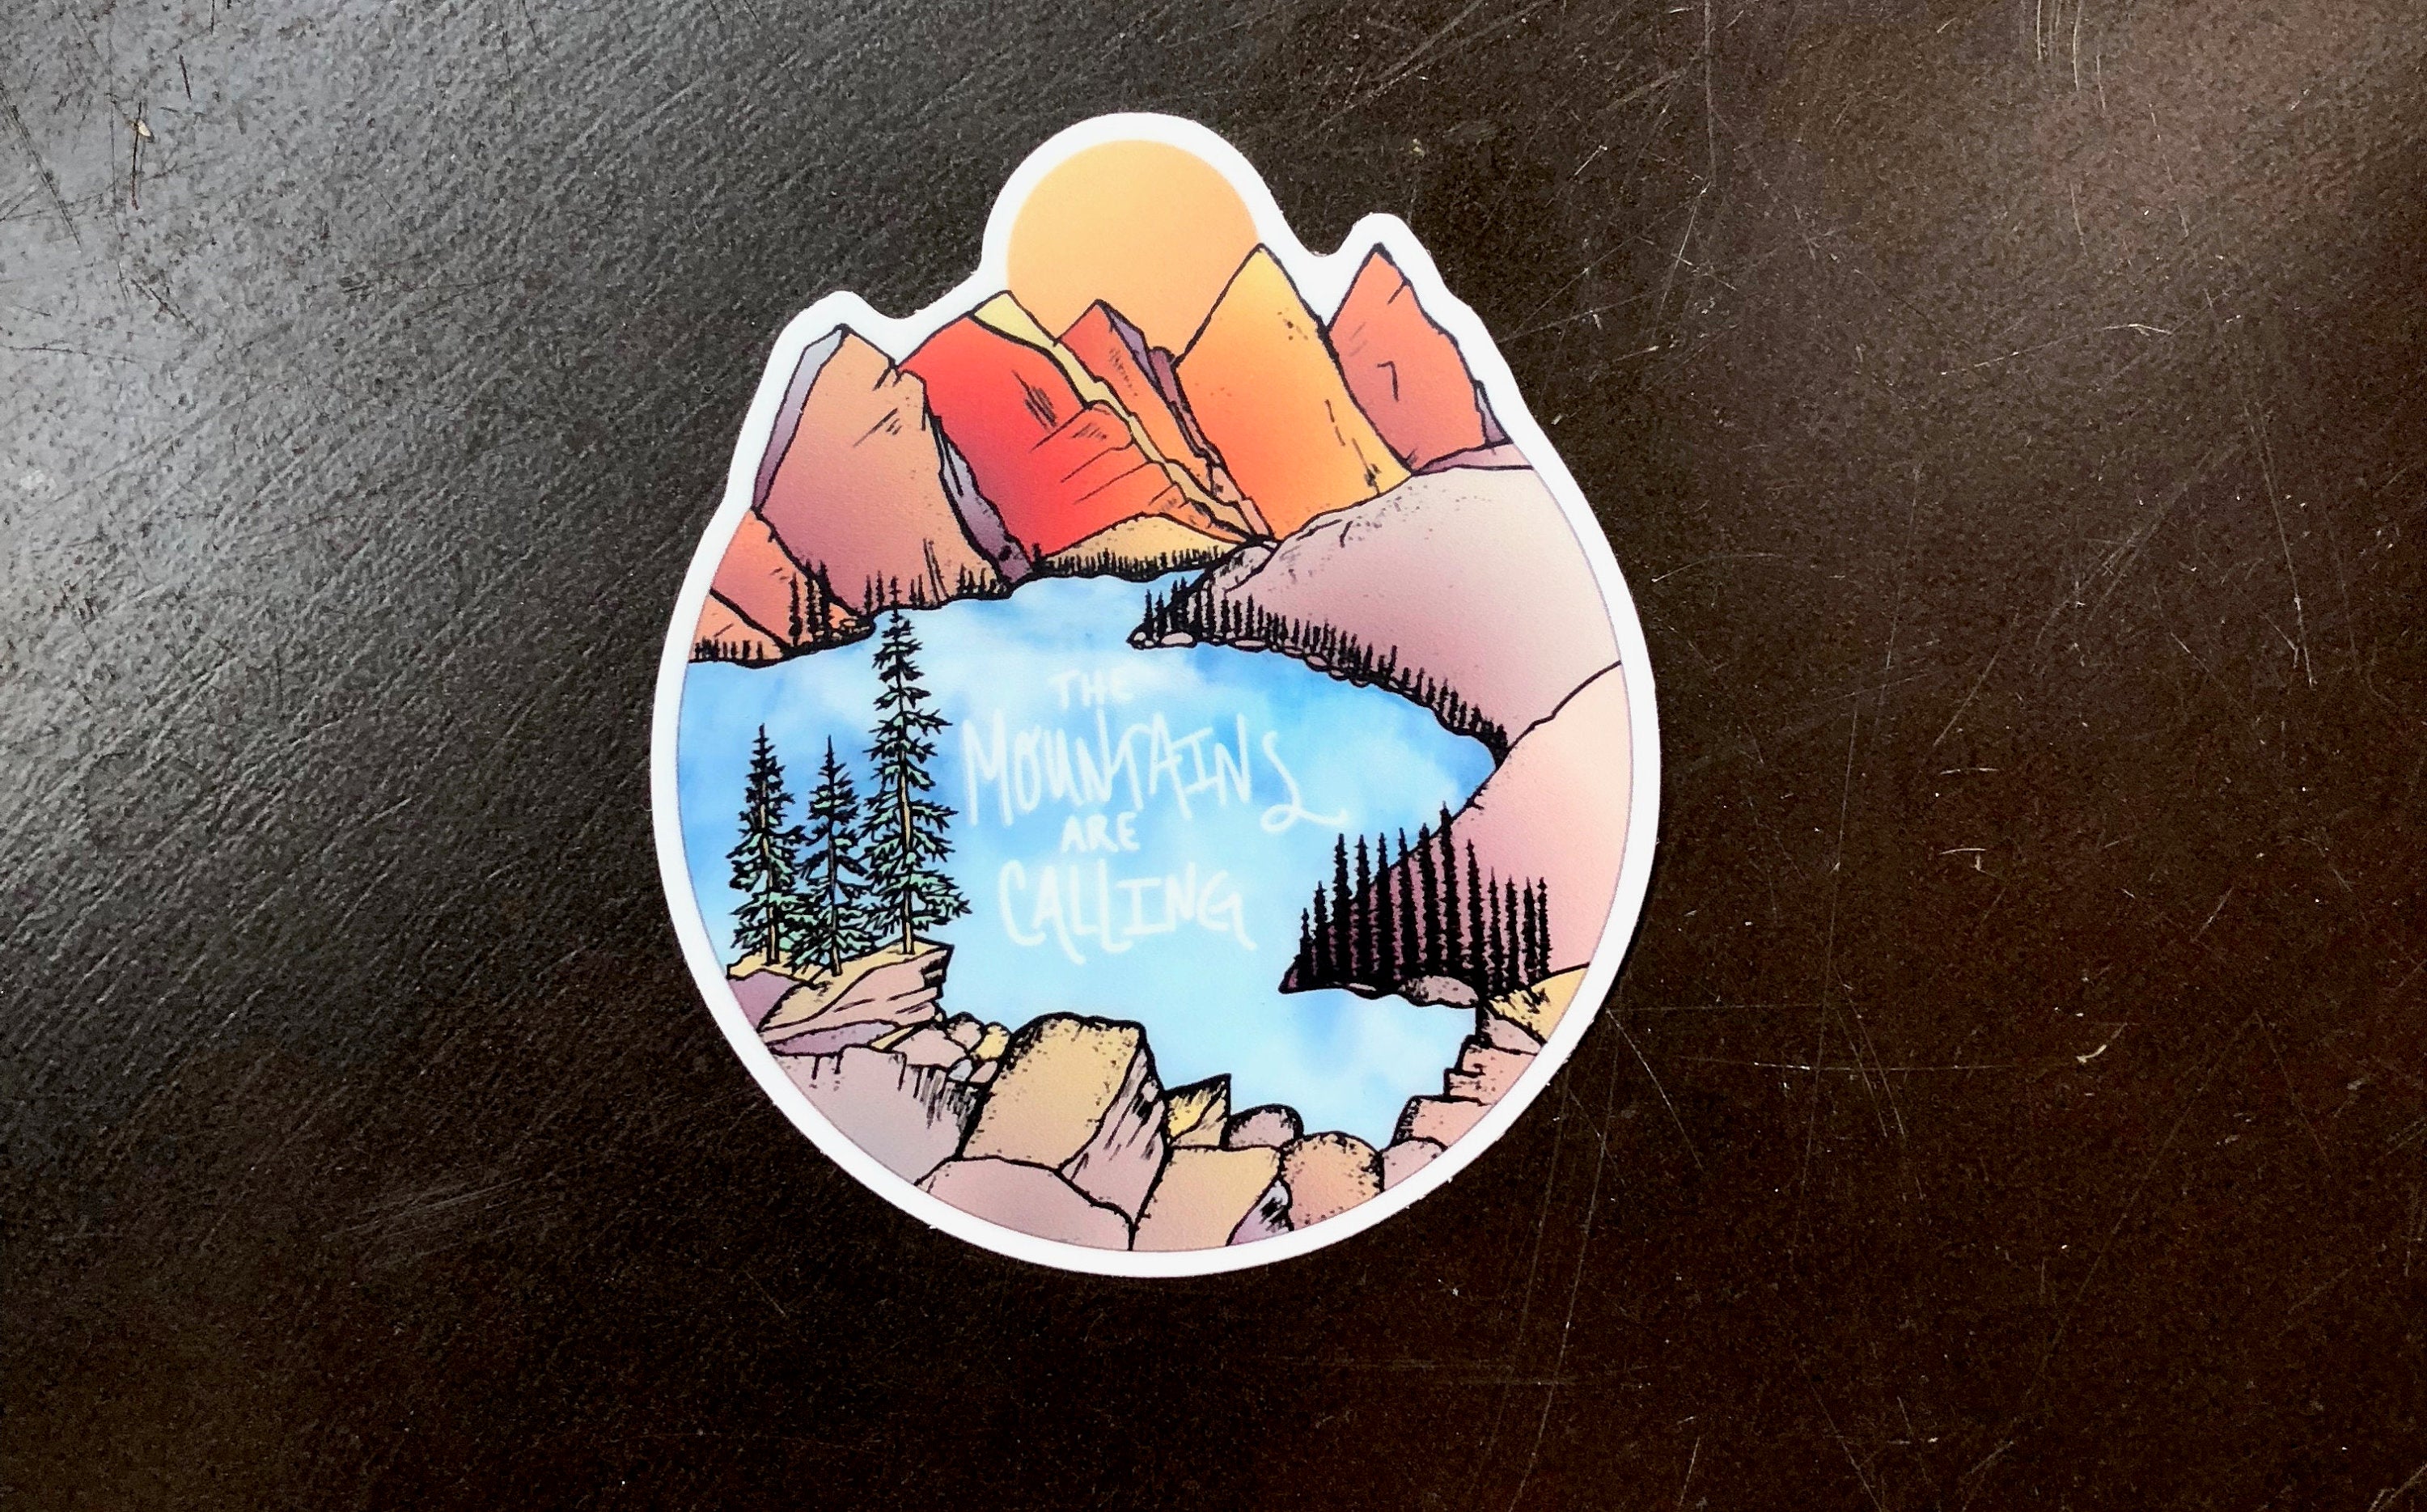 The Mountains are Calling Sticker-Vinyl Sticker-Roam Wild Designs